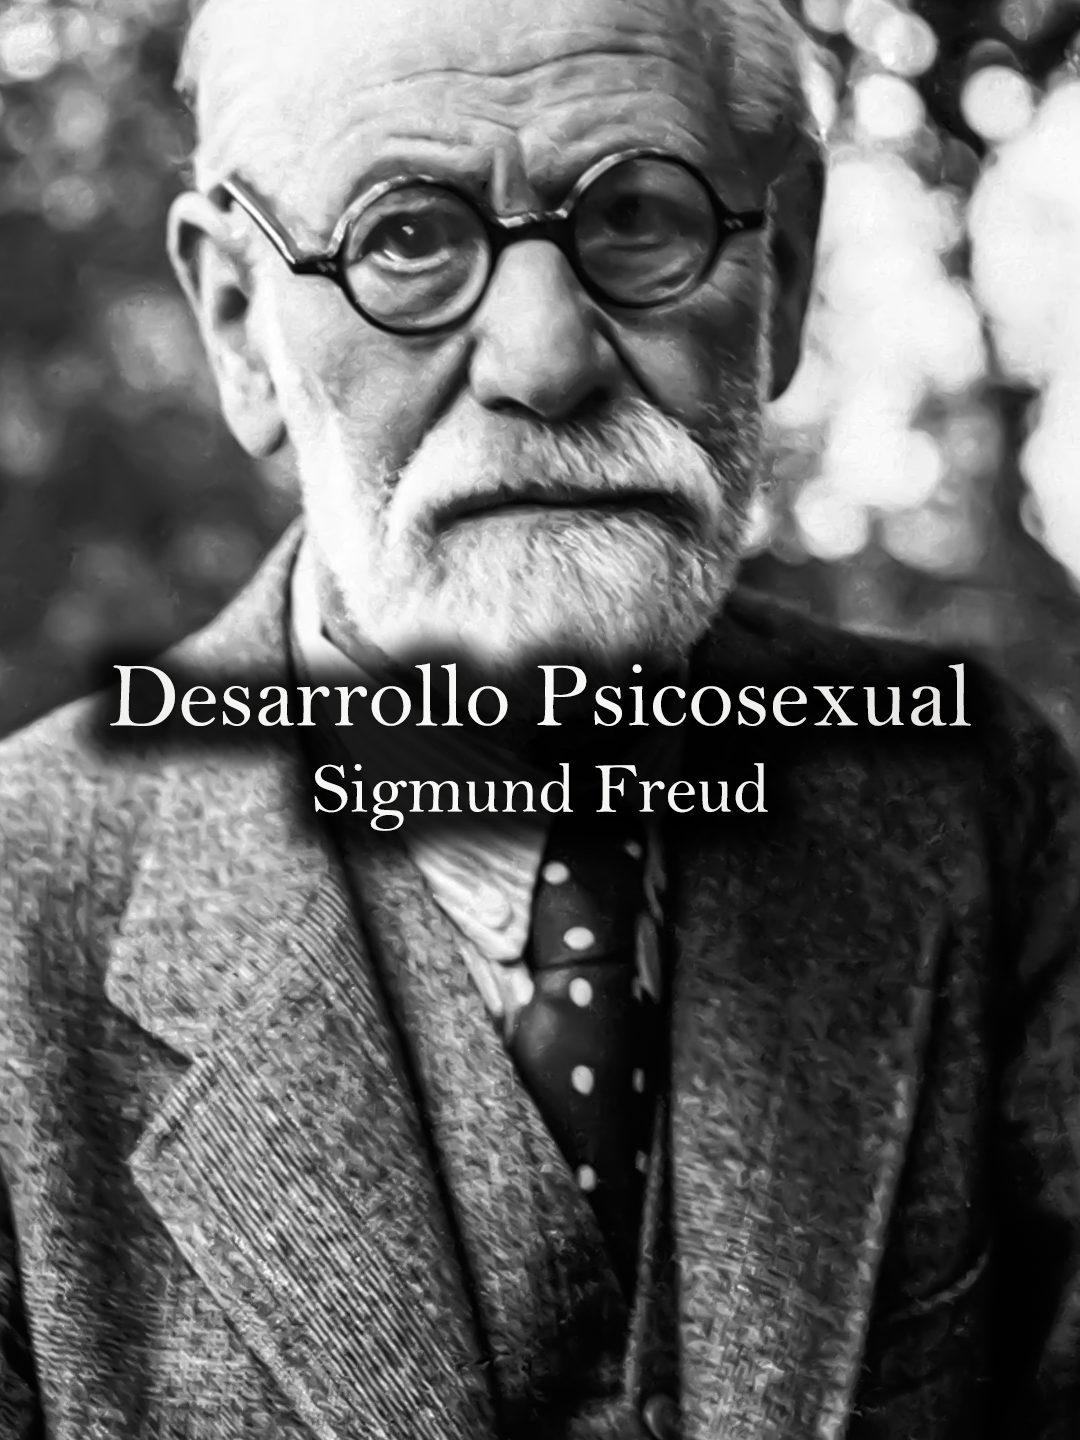 El desarrollo psicosexual: Sigmund Freud. #donfilosofo #sigmundfreud #psicosexual #psicologia #psicologo #filosofo #teoria